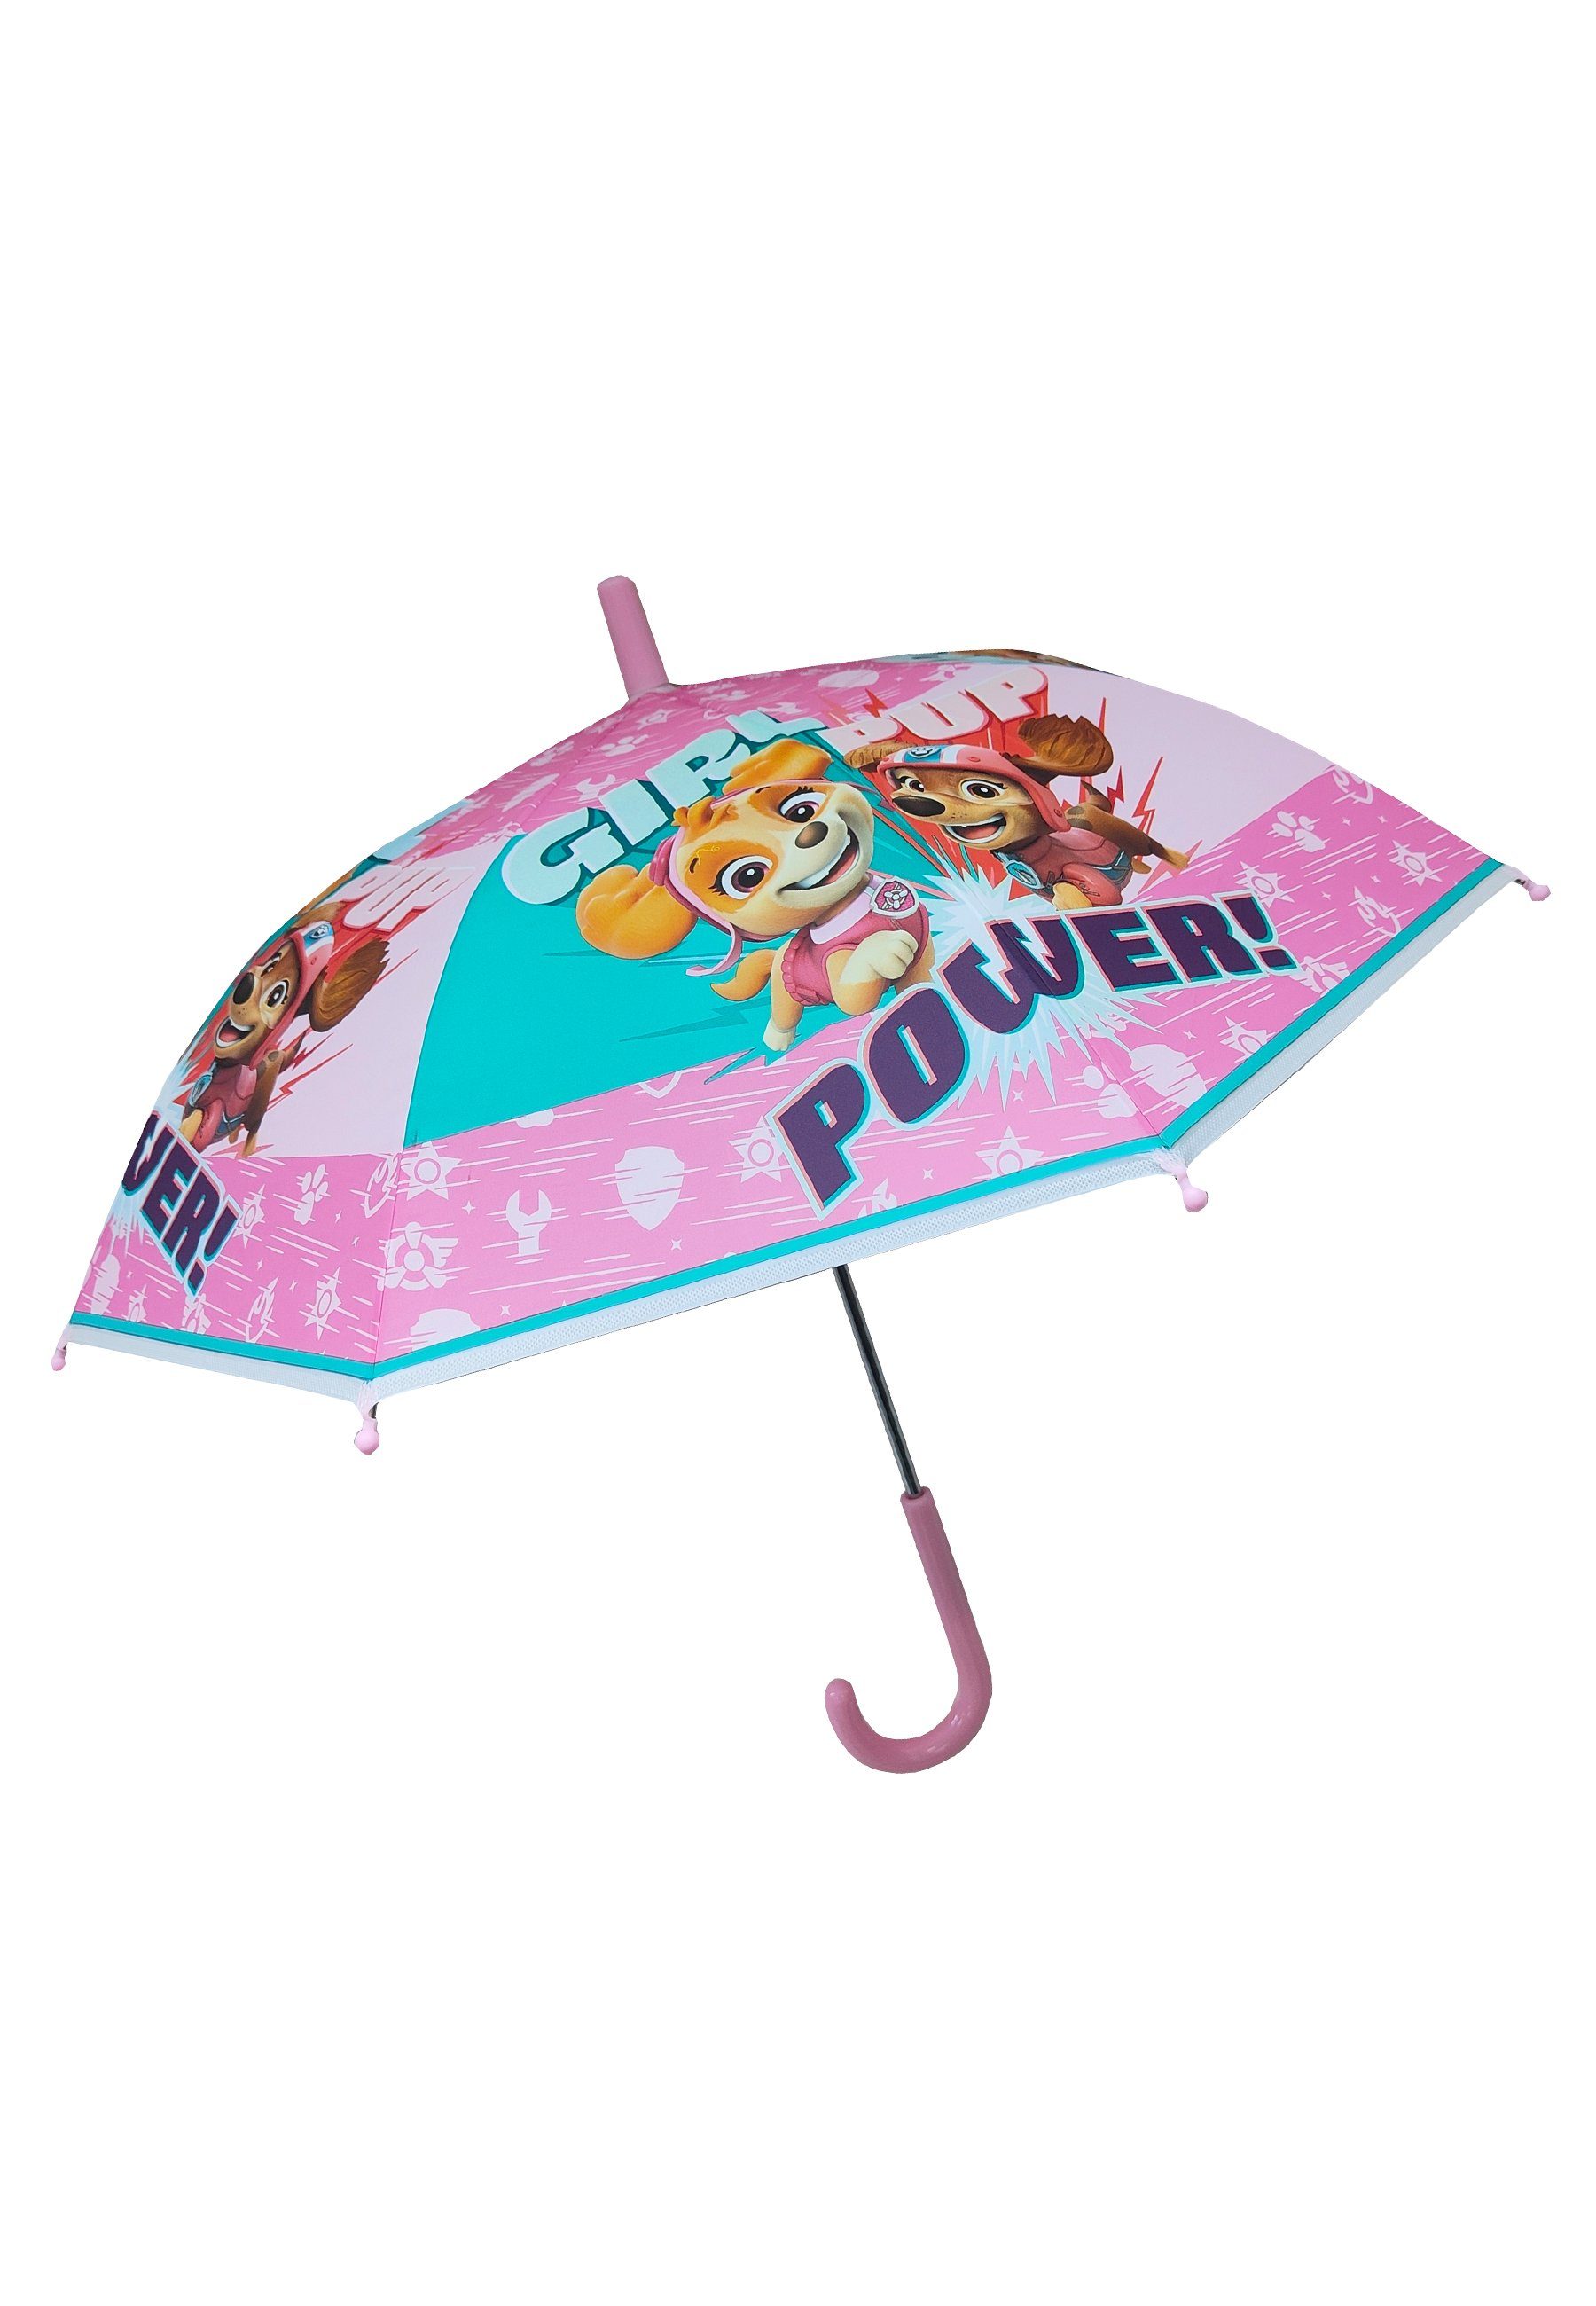 Stockregenschirm Regenschirm Stock-Schirm Skye PATROL Kinder Mädchen PAW